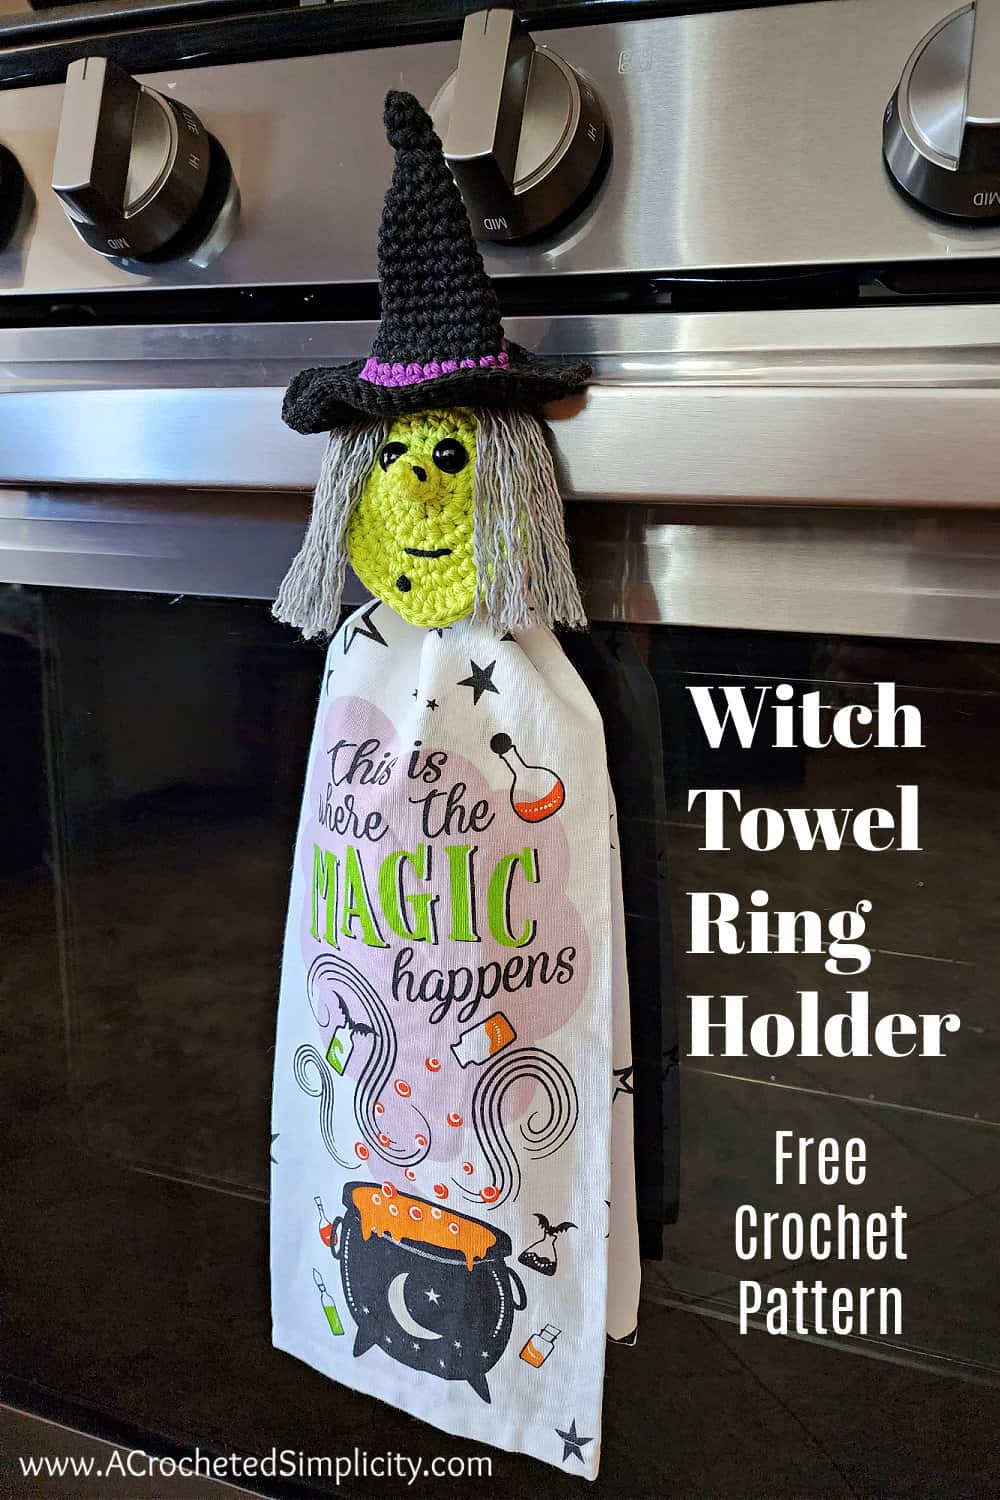 Small crochet witch head towel holder hanging on oven door handle.
